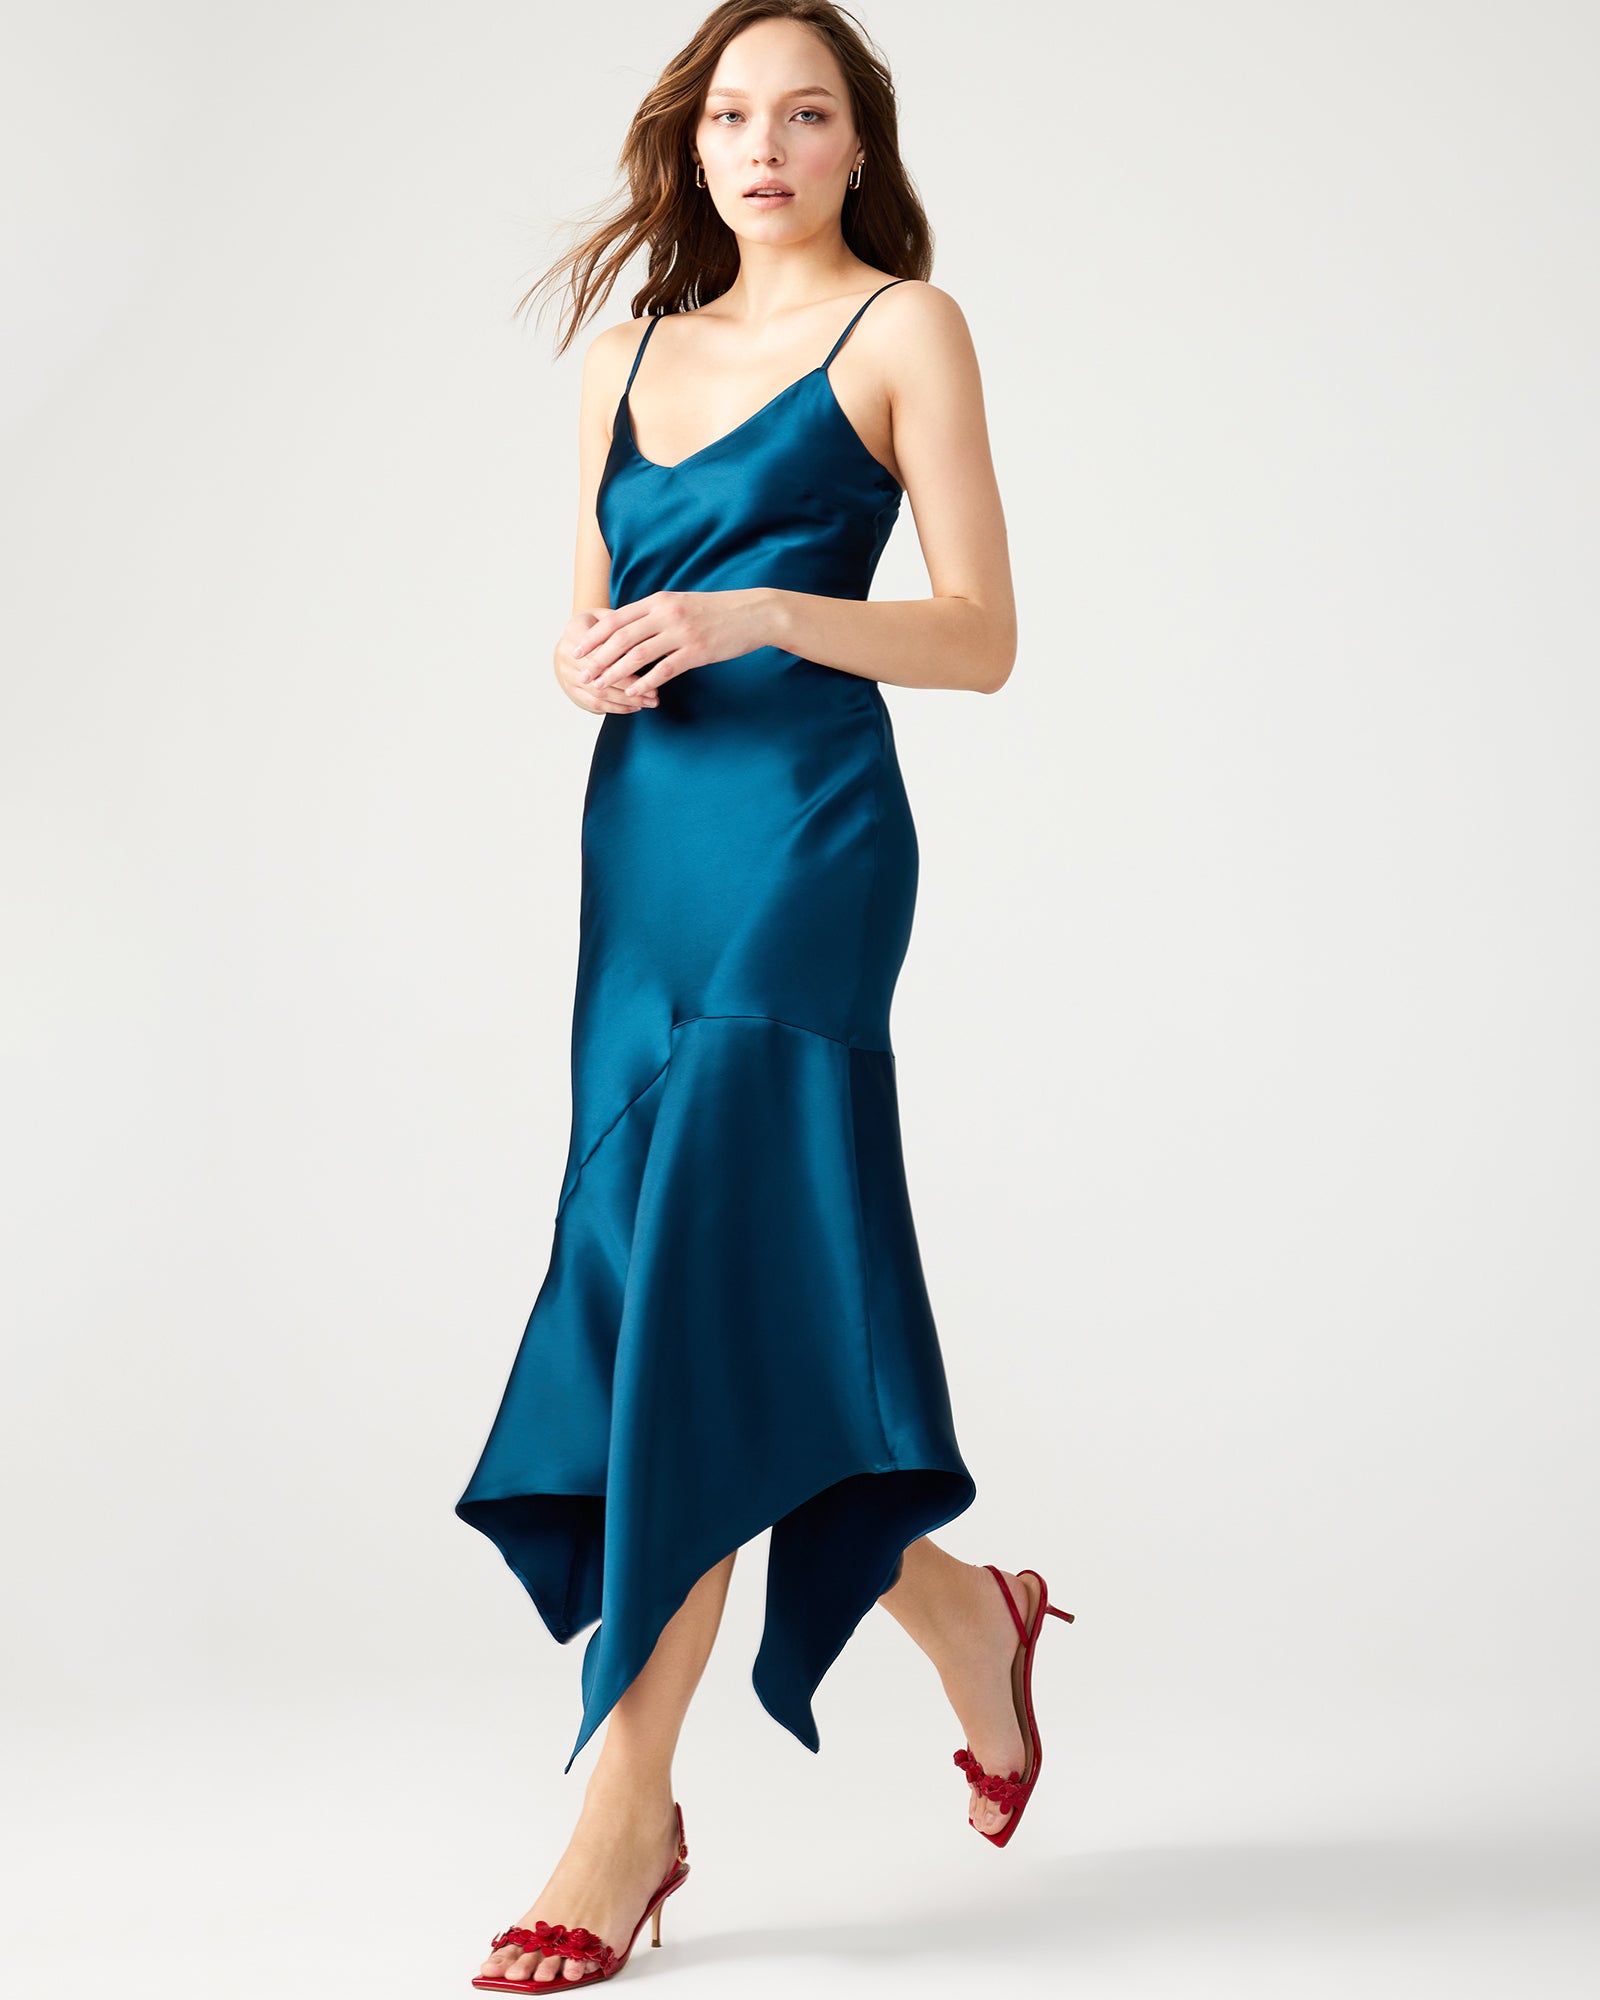 SERINA Black Fitted Dress | Women's Designer Dresses – Steve Madden Canada